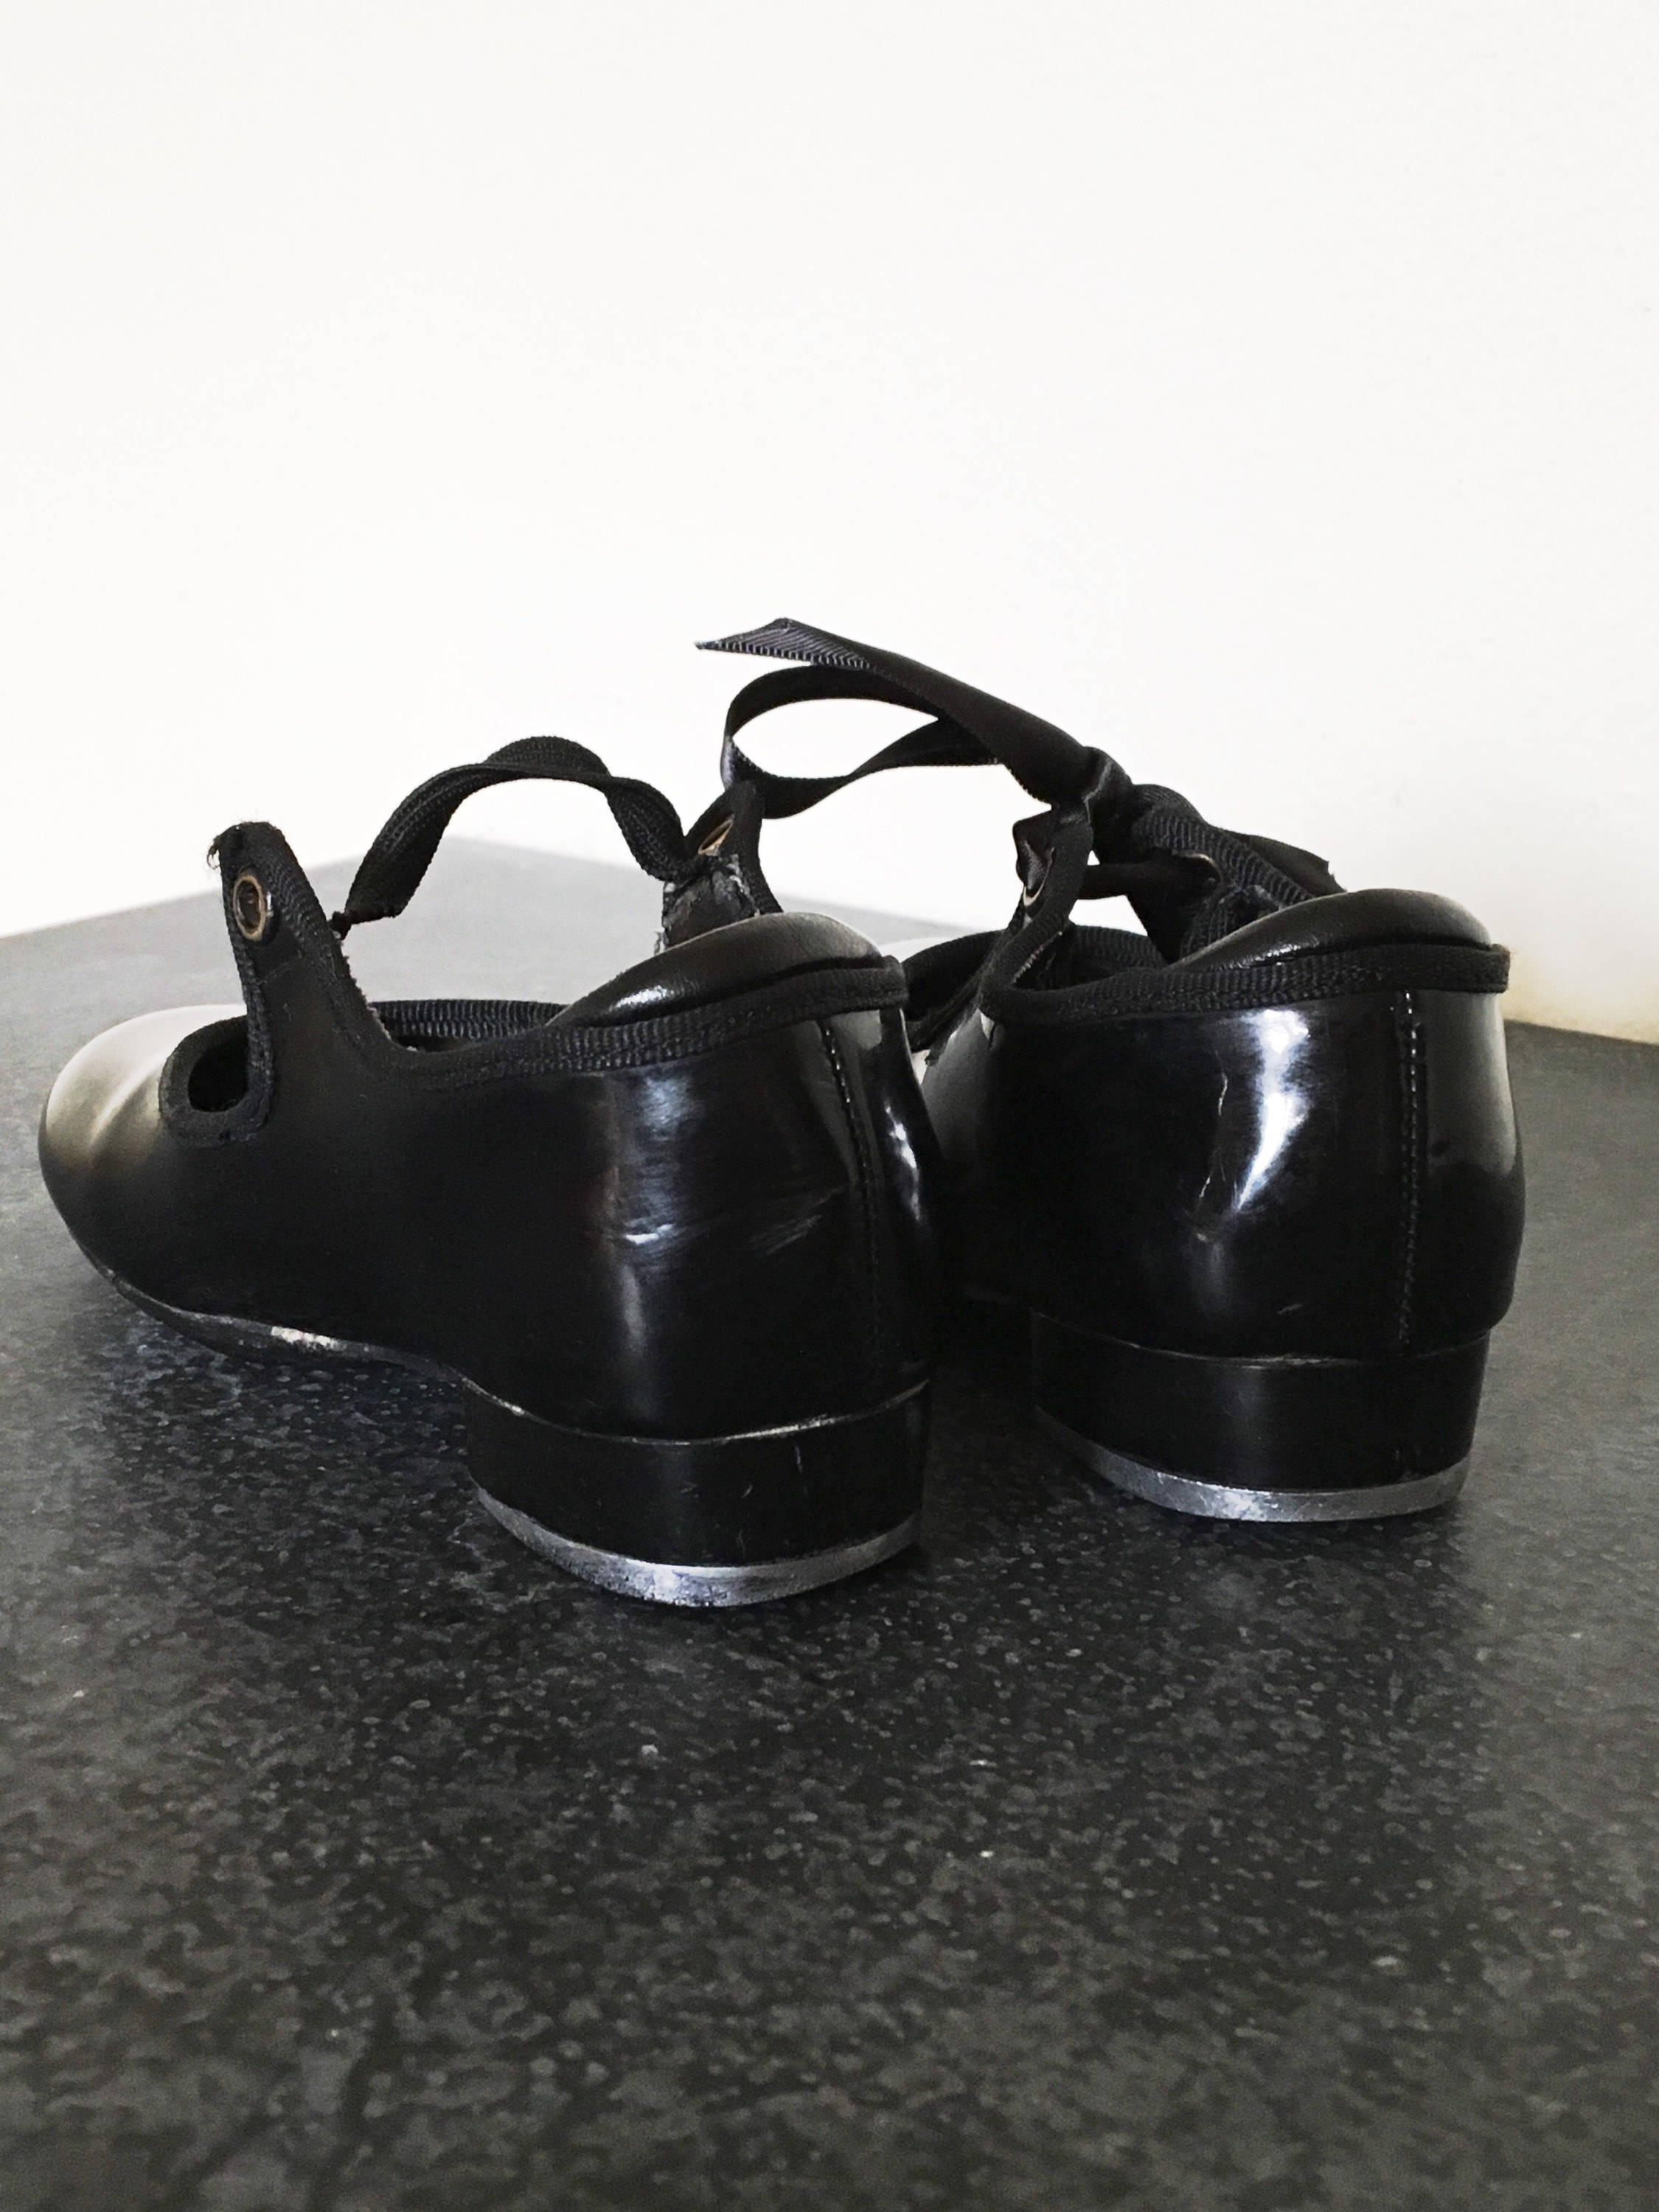 size 10 Dress up & Pretend play Schoenen Meisjesschoenen Dansschoenen little Girl Taps Vintage Black Patent Leather Tap shoes 